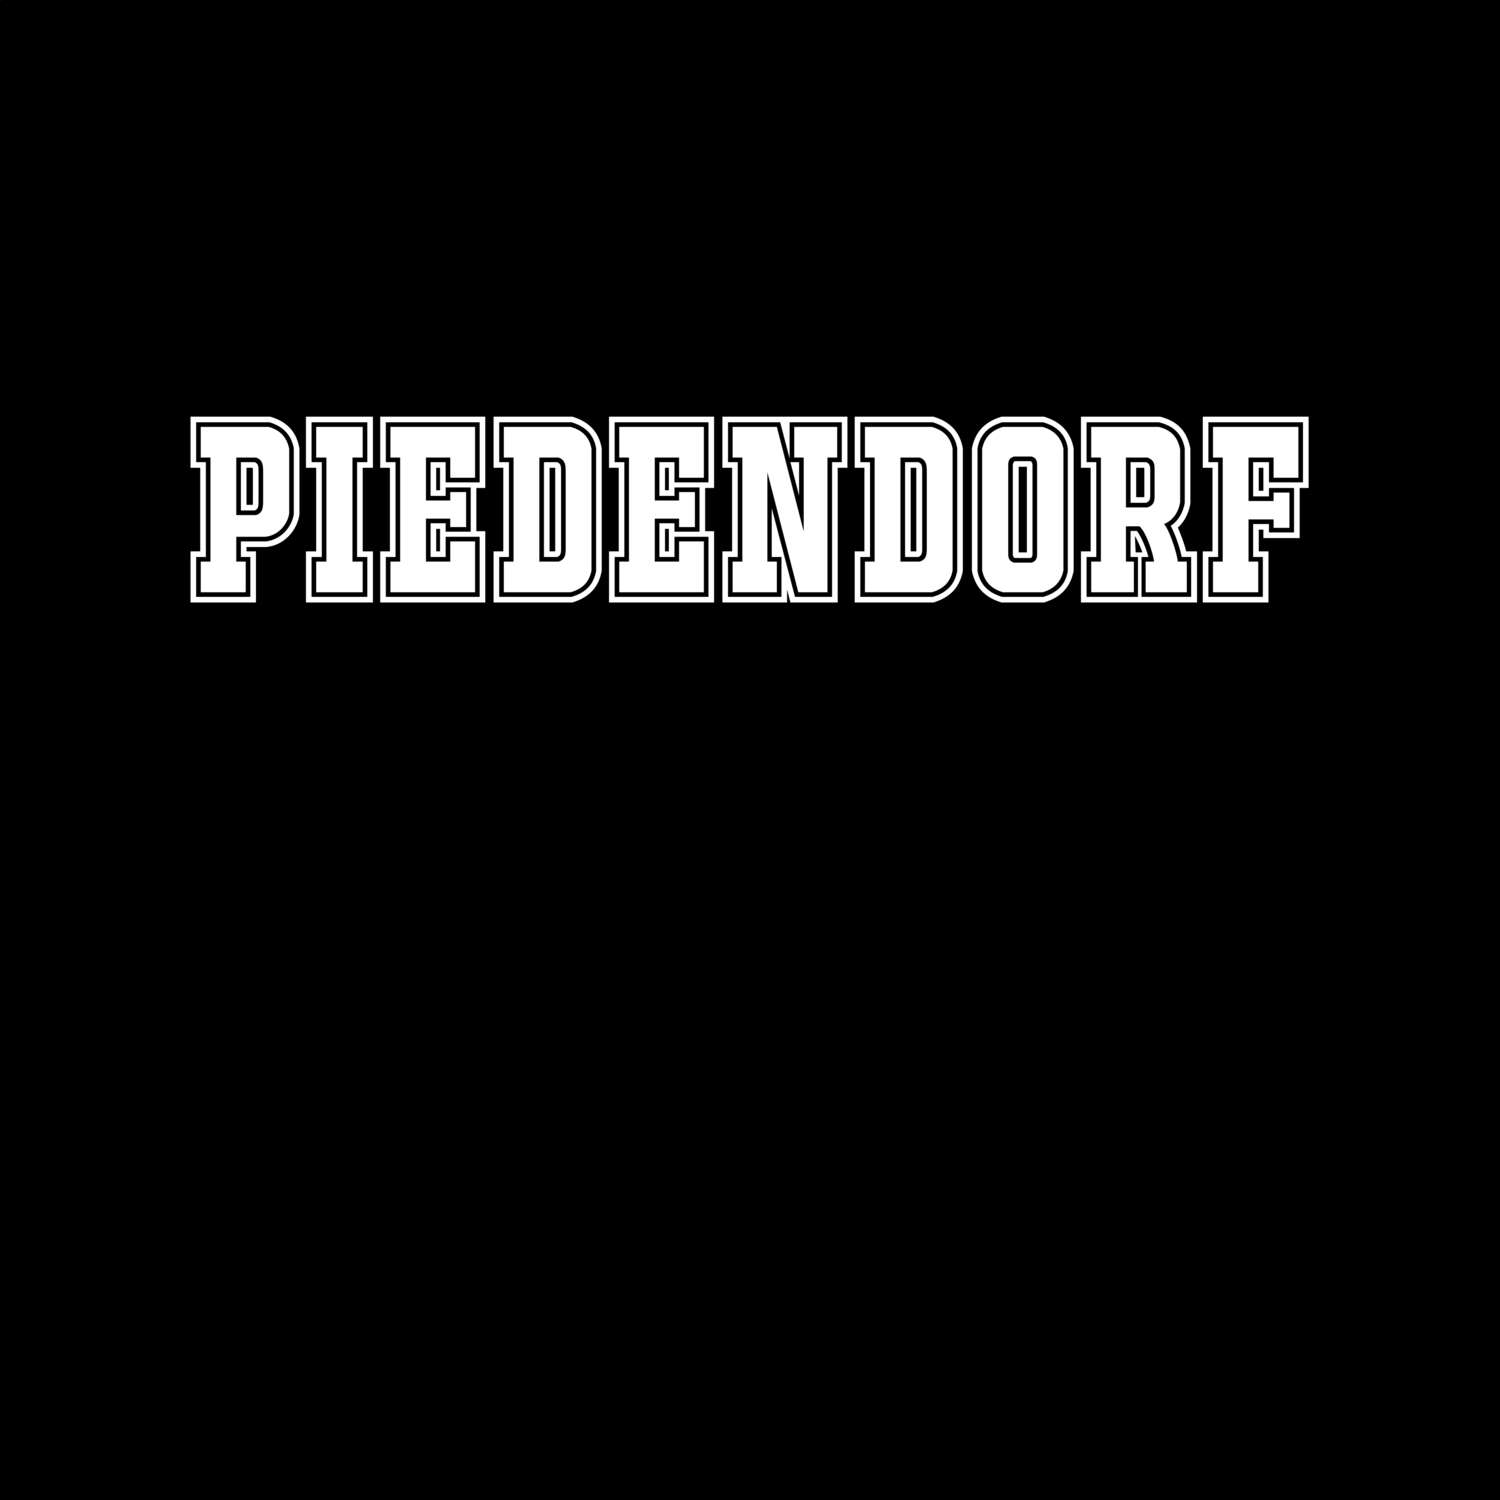 Piedendorf T-Shirt »Classic«